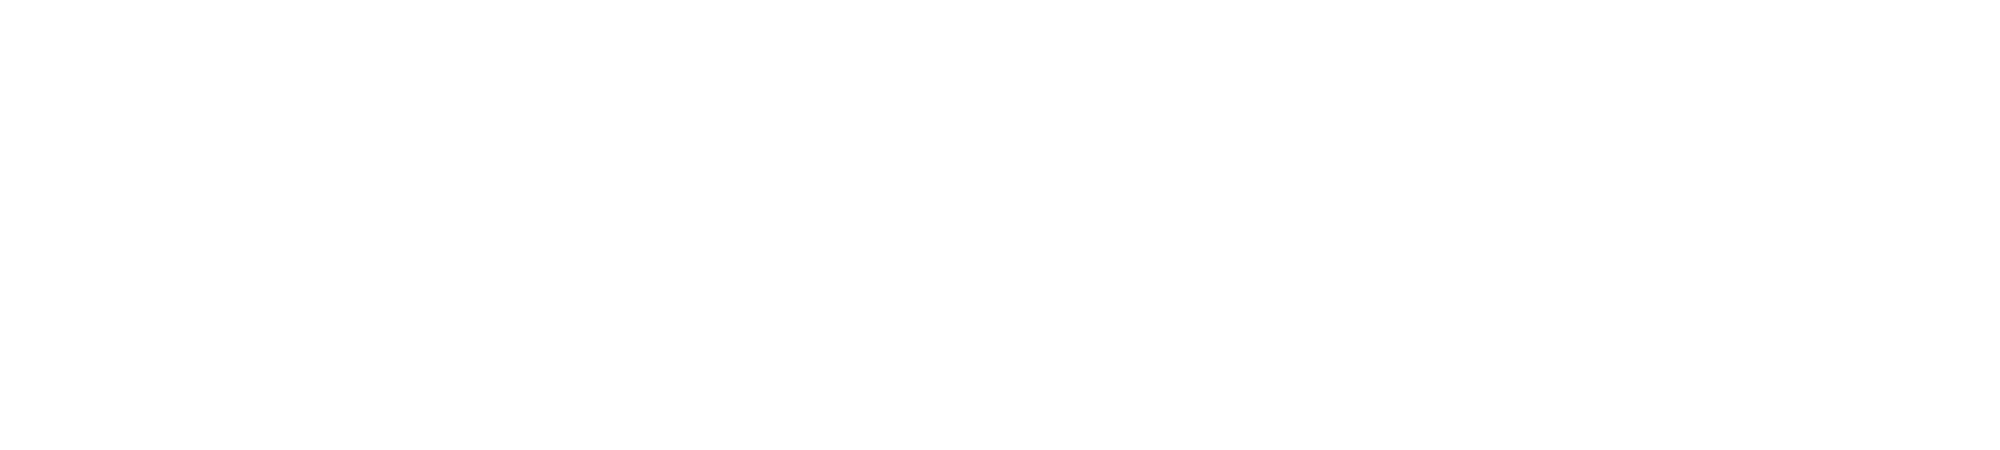 HUS logo white